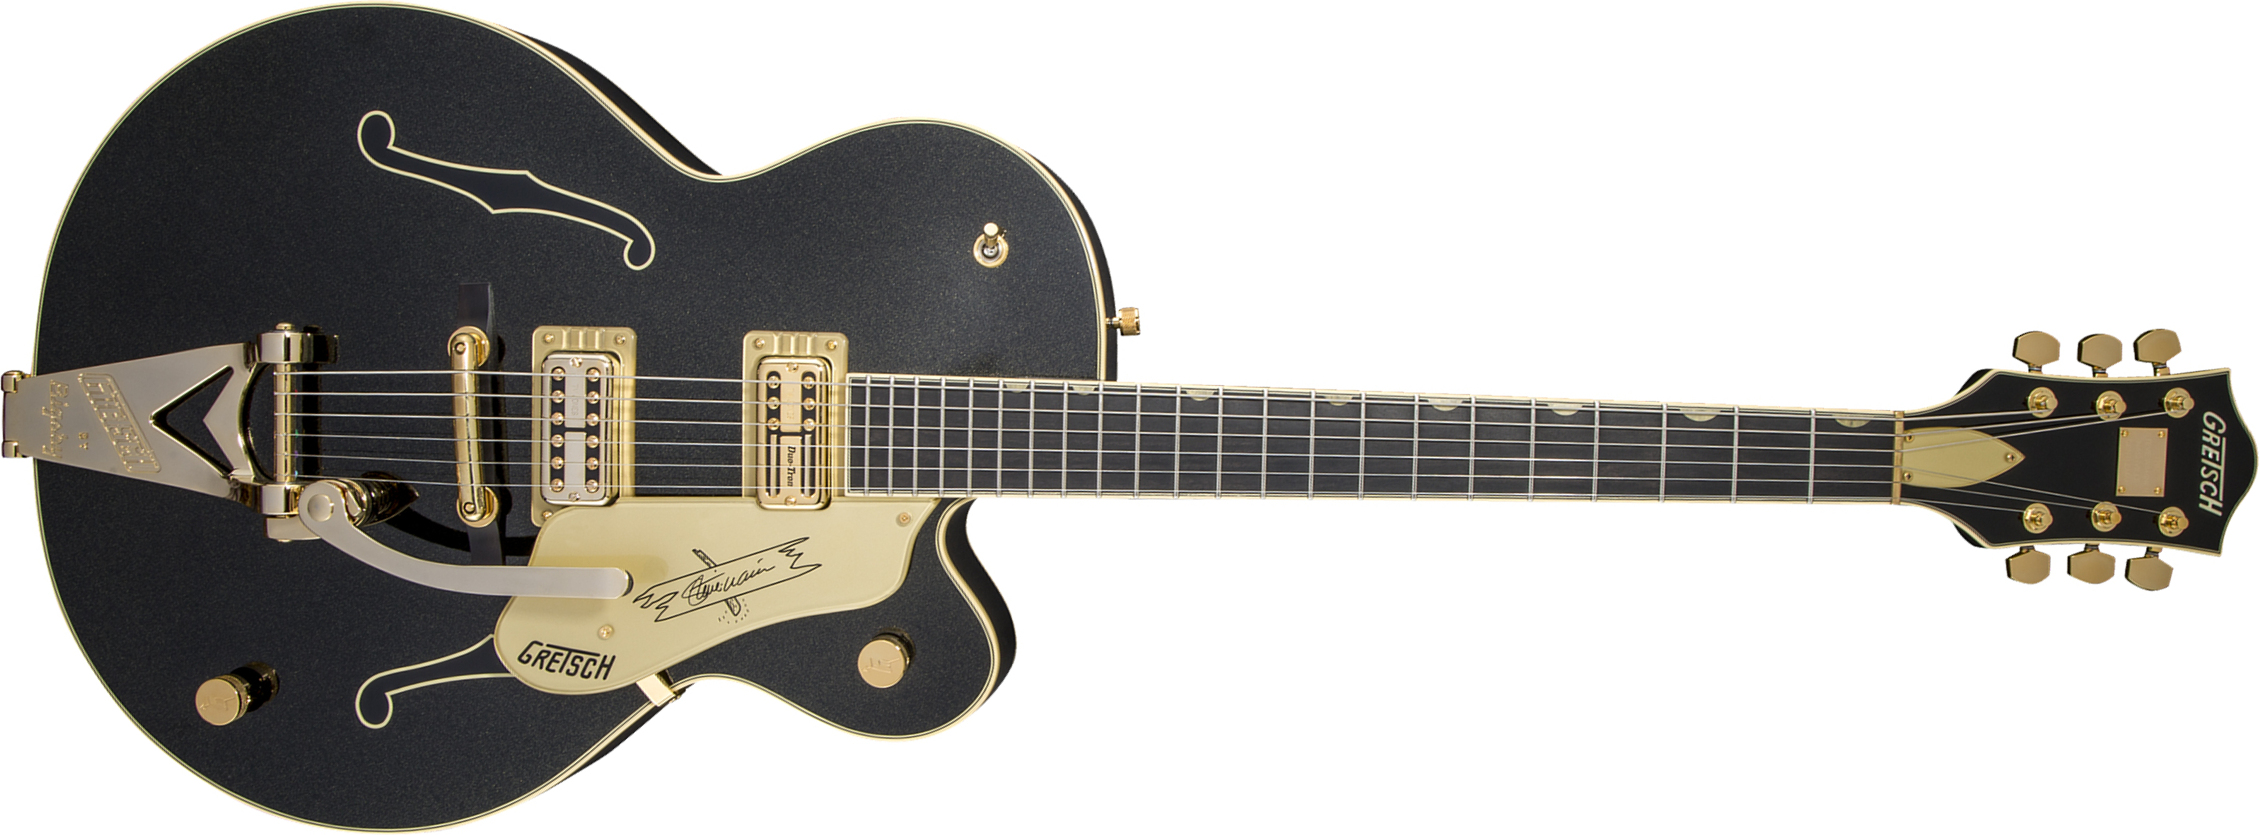 Gretsch Steve Wariner G6120t-sw Nashville Japon Signature Hh Bigsby Eb - Magic Black - Guitare Électrique 1/2 Caisse - Main picture